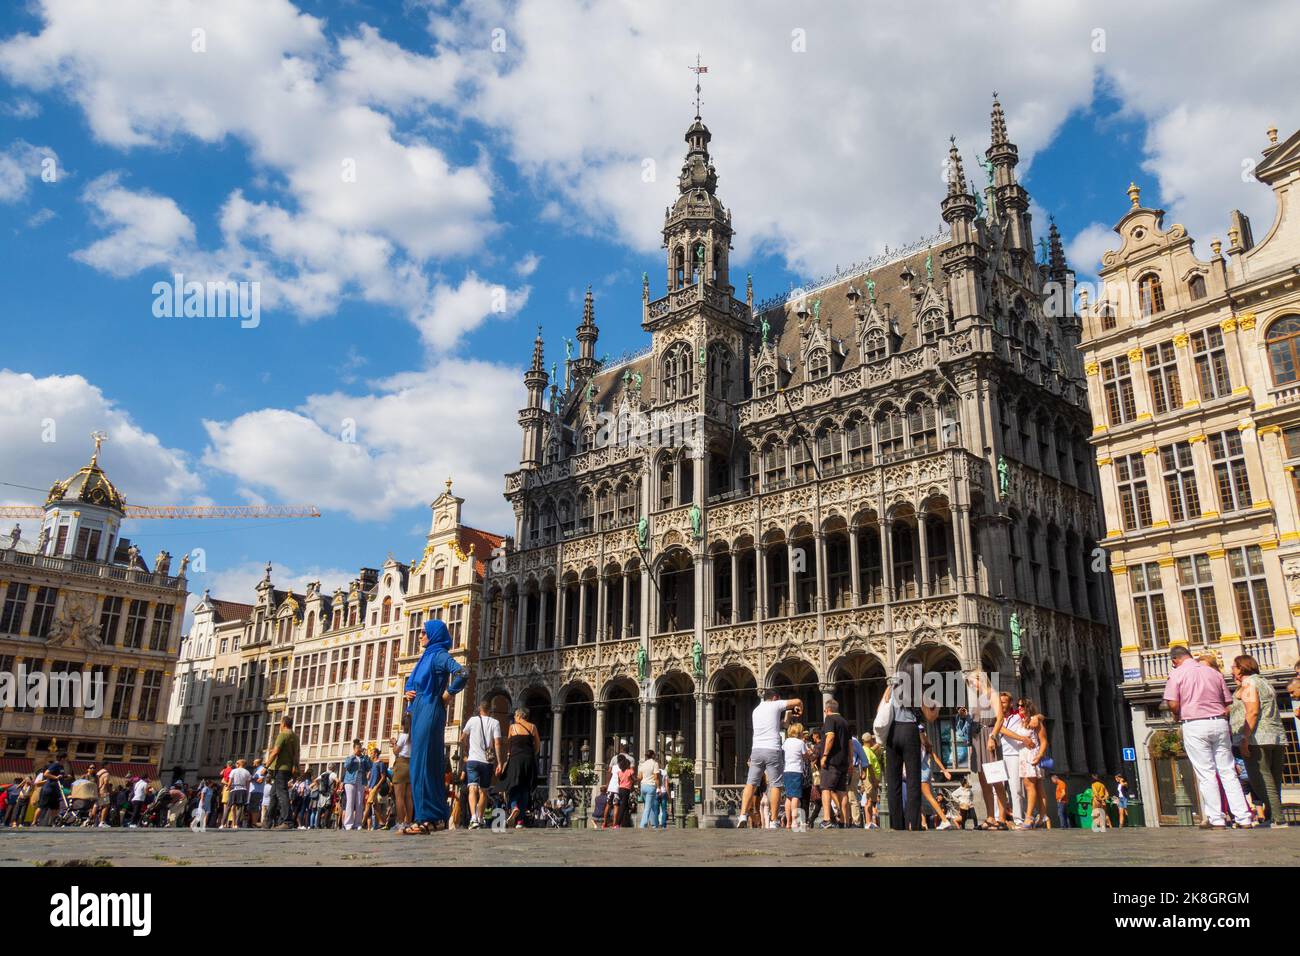 Bruxelles, Belgique - 20 août 2022 : touristes à la découverte de la célèbre Grand-place et des bâtiments historiques de Bruxelles Banque D'Images